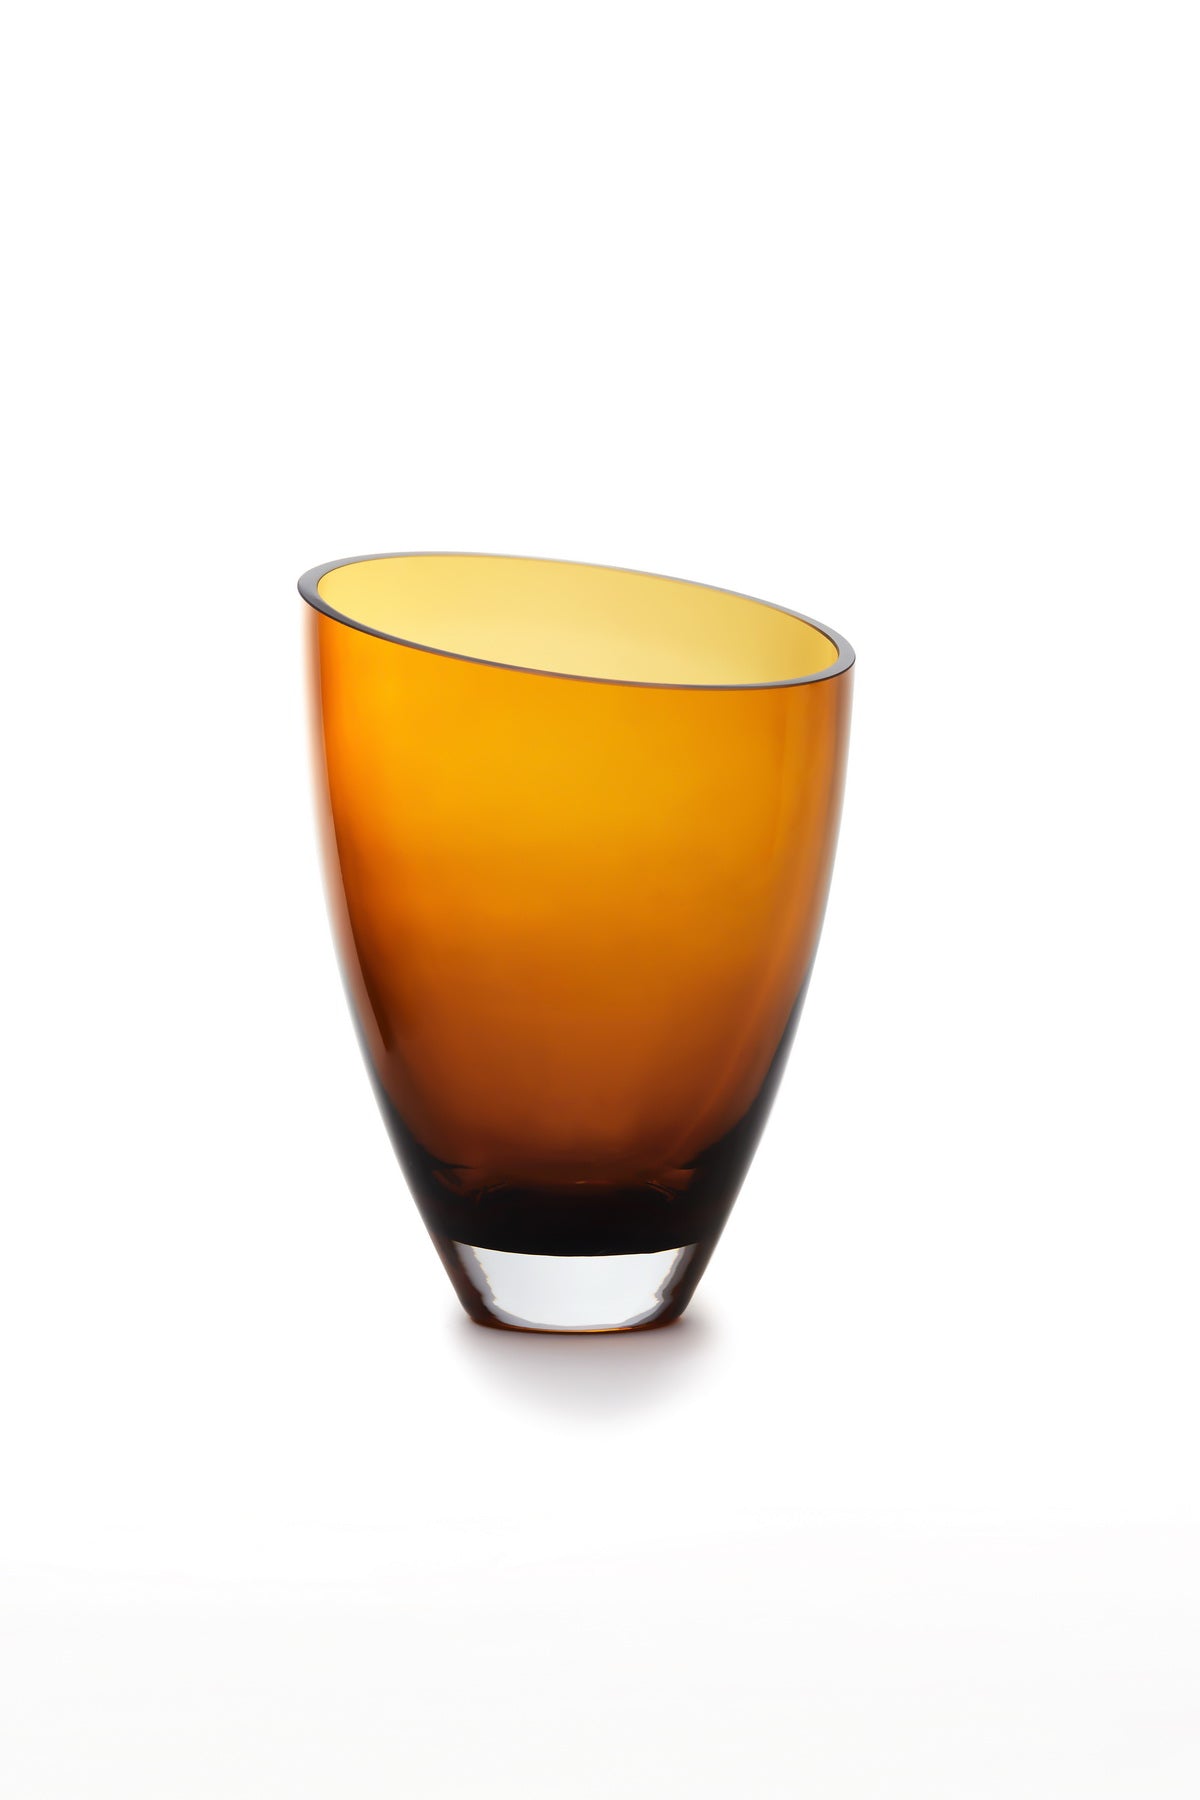 glass vase of inverse parabolic shape skewed, BULED, 9mm luxury glass